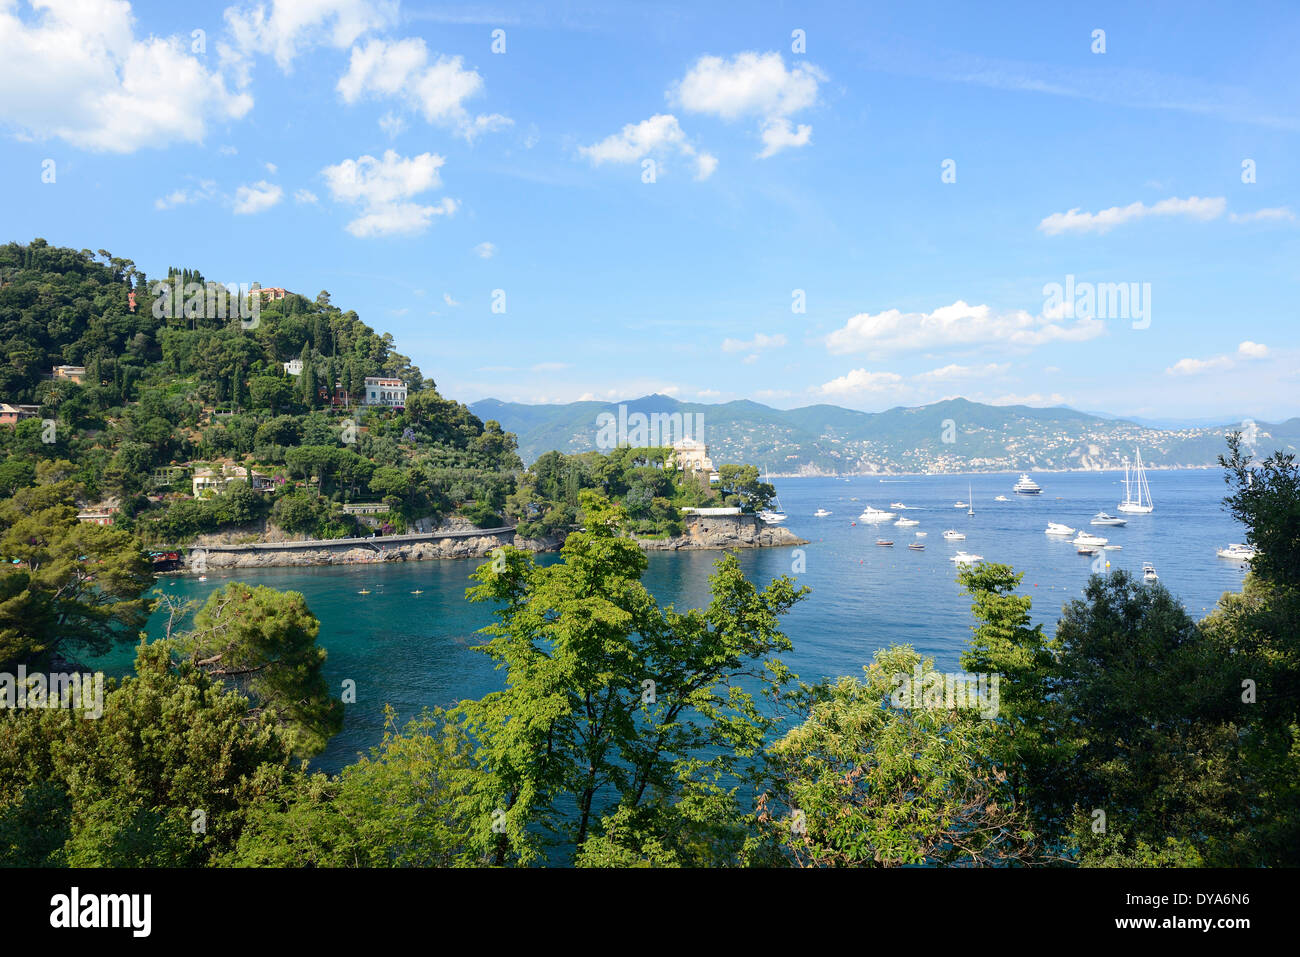 Italy, Riviera, Genoa province, Portofino, Mediterranean, coastline, sea, coast, landscape Stock Photo